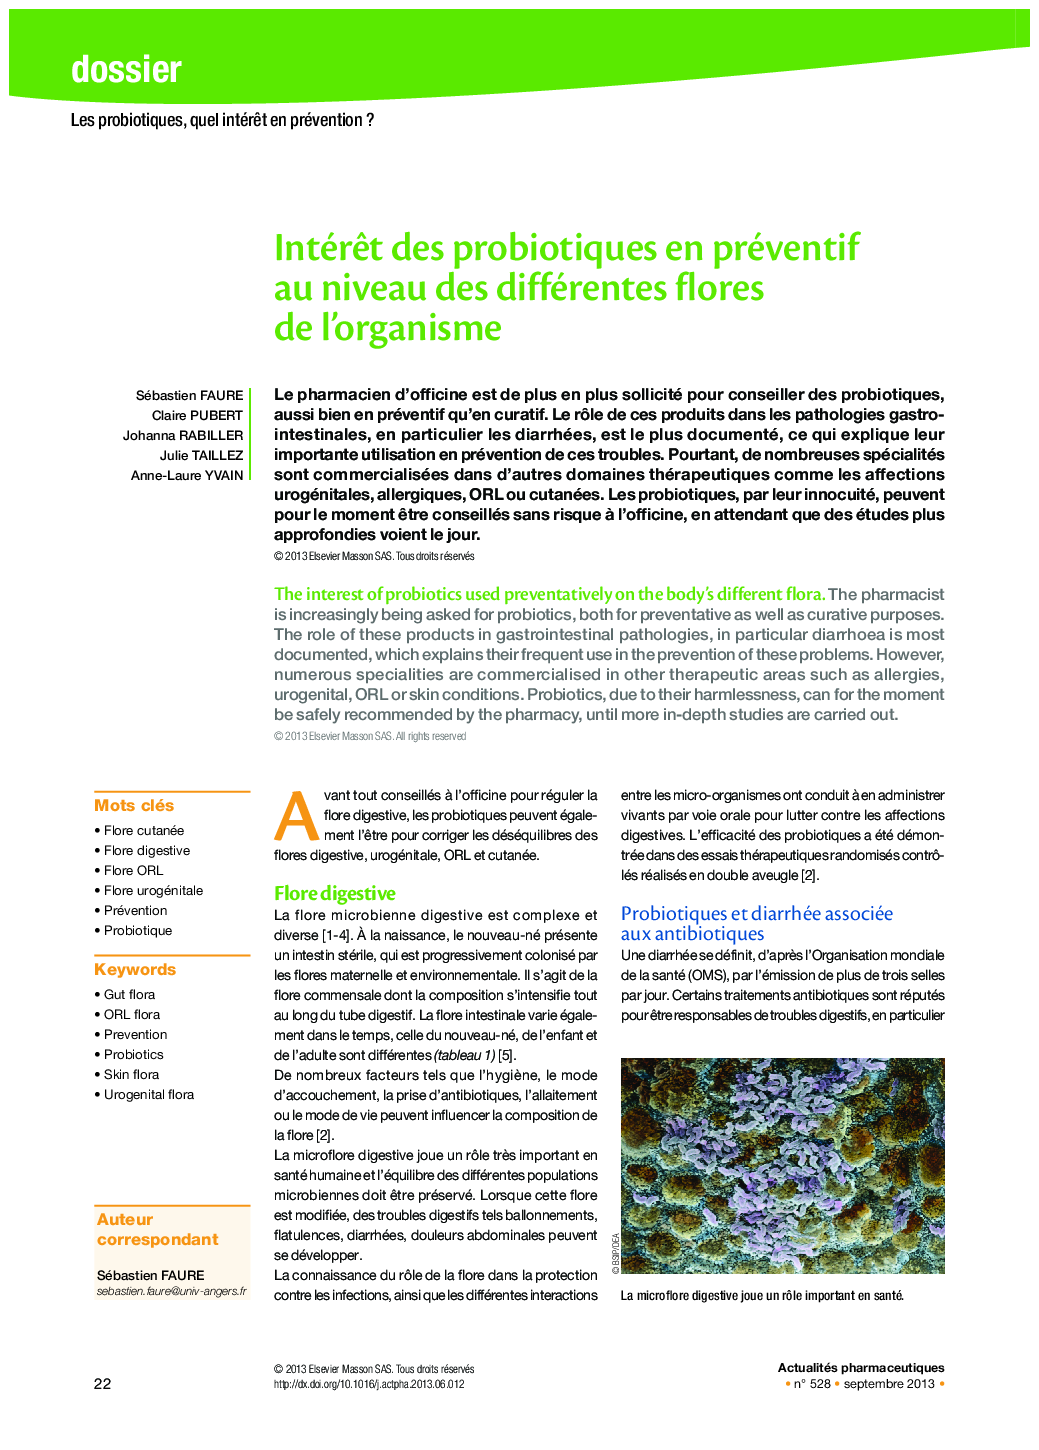 Intérêt des probiotiques en préventif au niveau des différentes flores de l’organisme